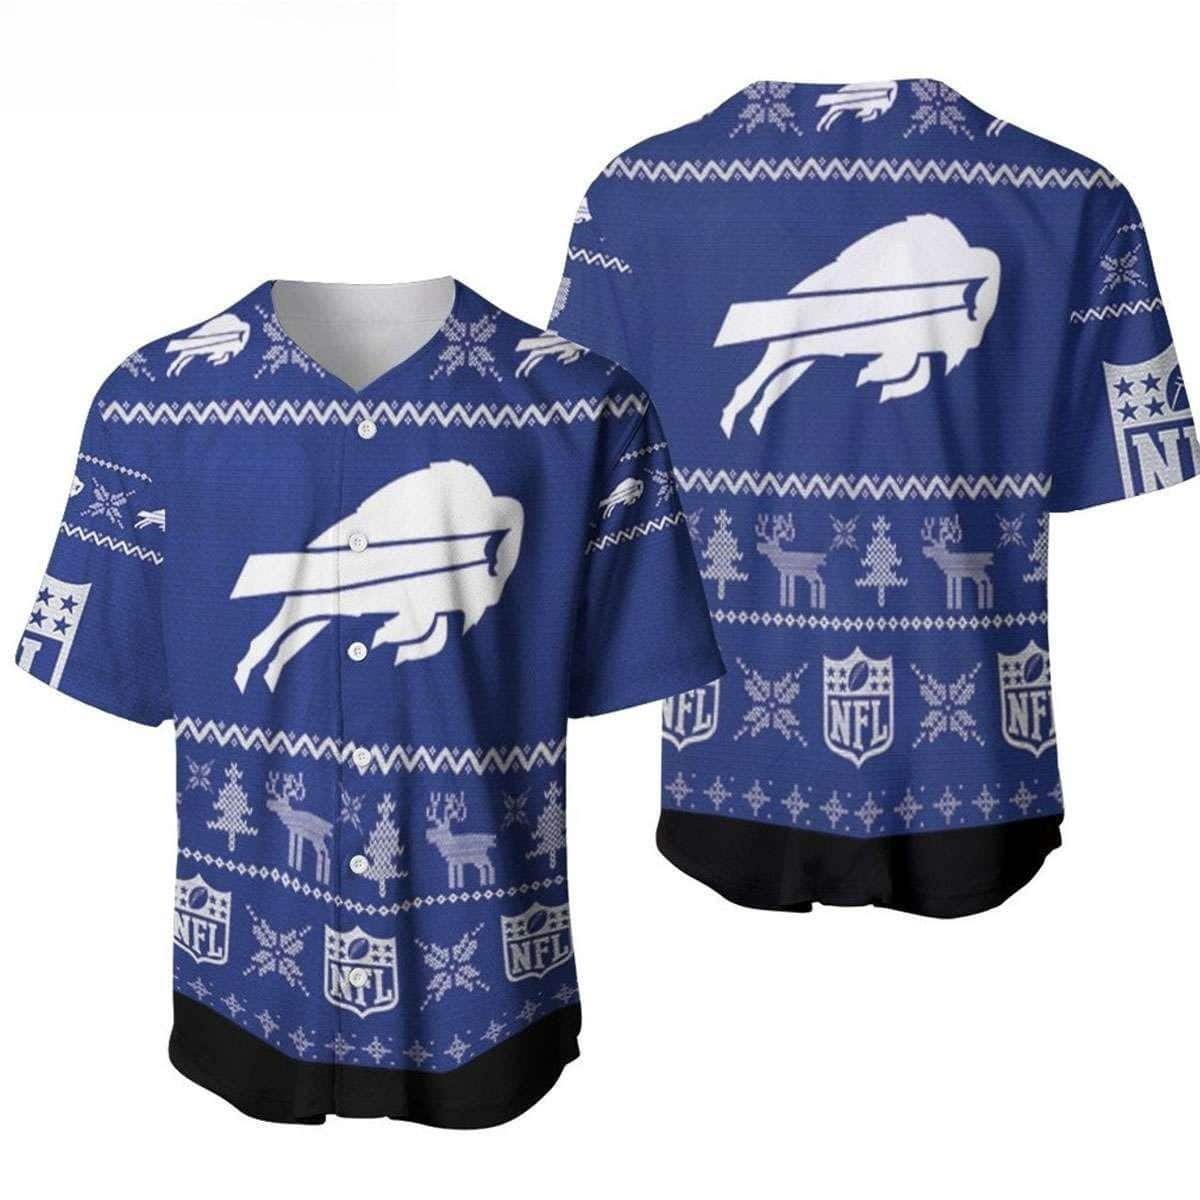 NFL Buffalo Bills Baseball Jersey Christmas Gift For Best Friend